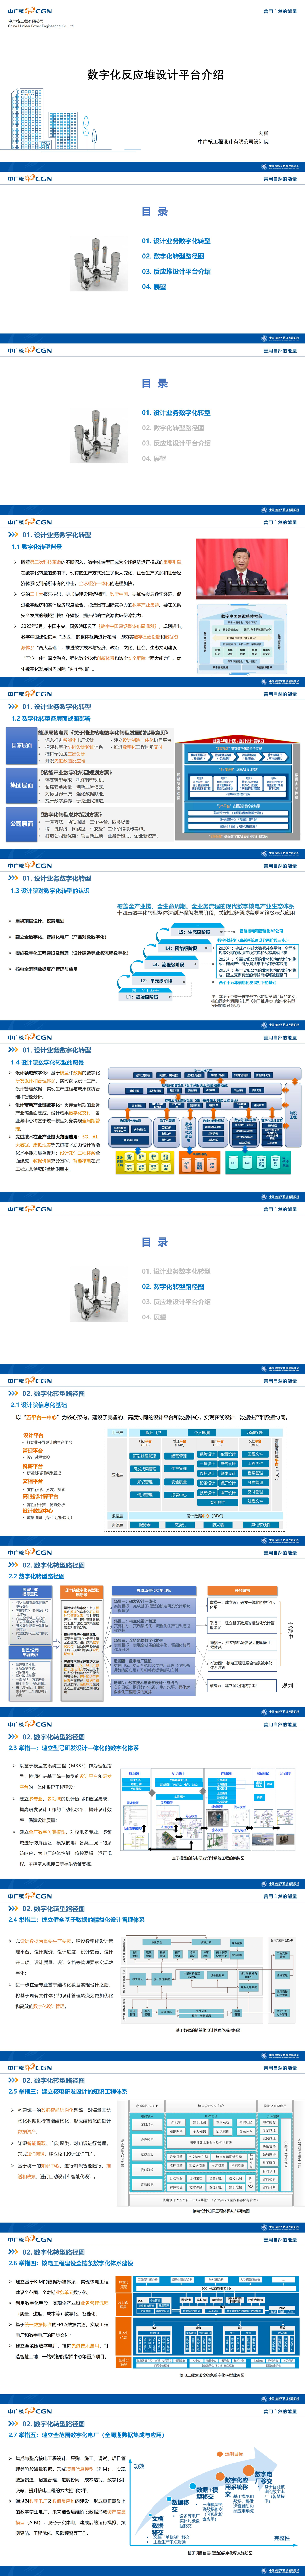 5、刘勇-数字化反应堆设计平台介绍 刘勇_01.jpg